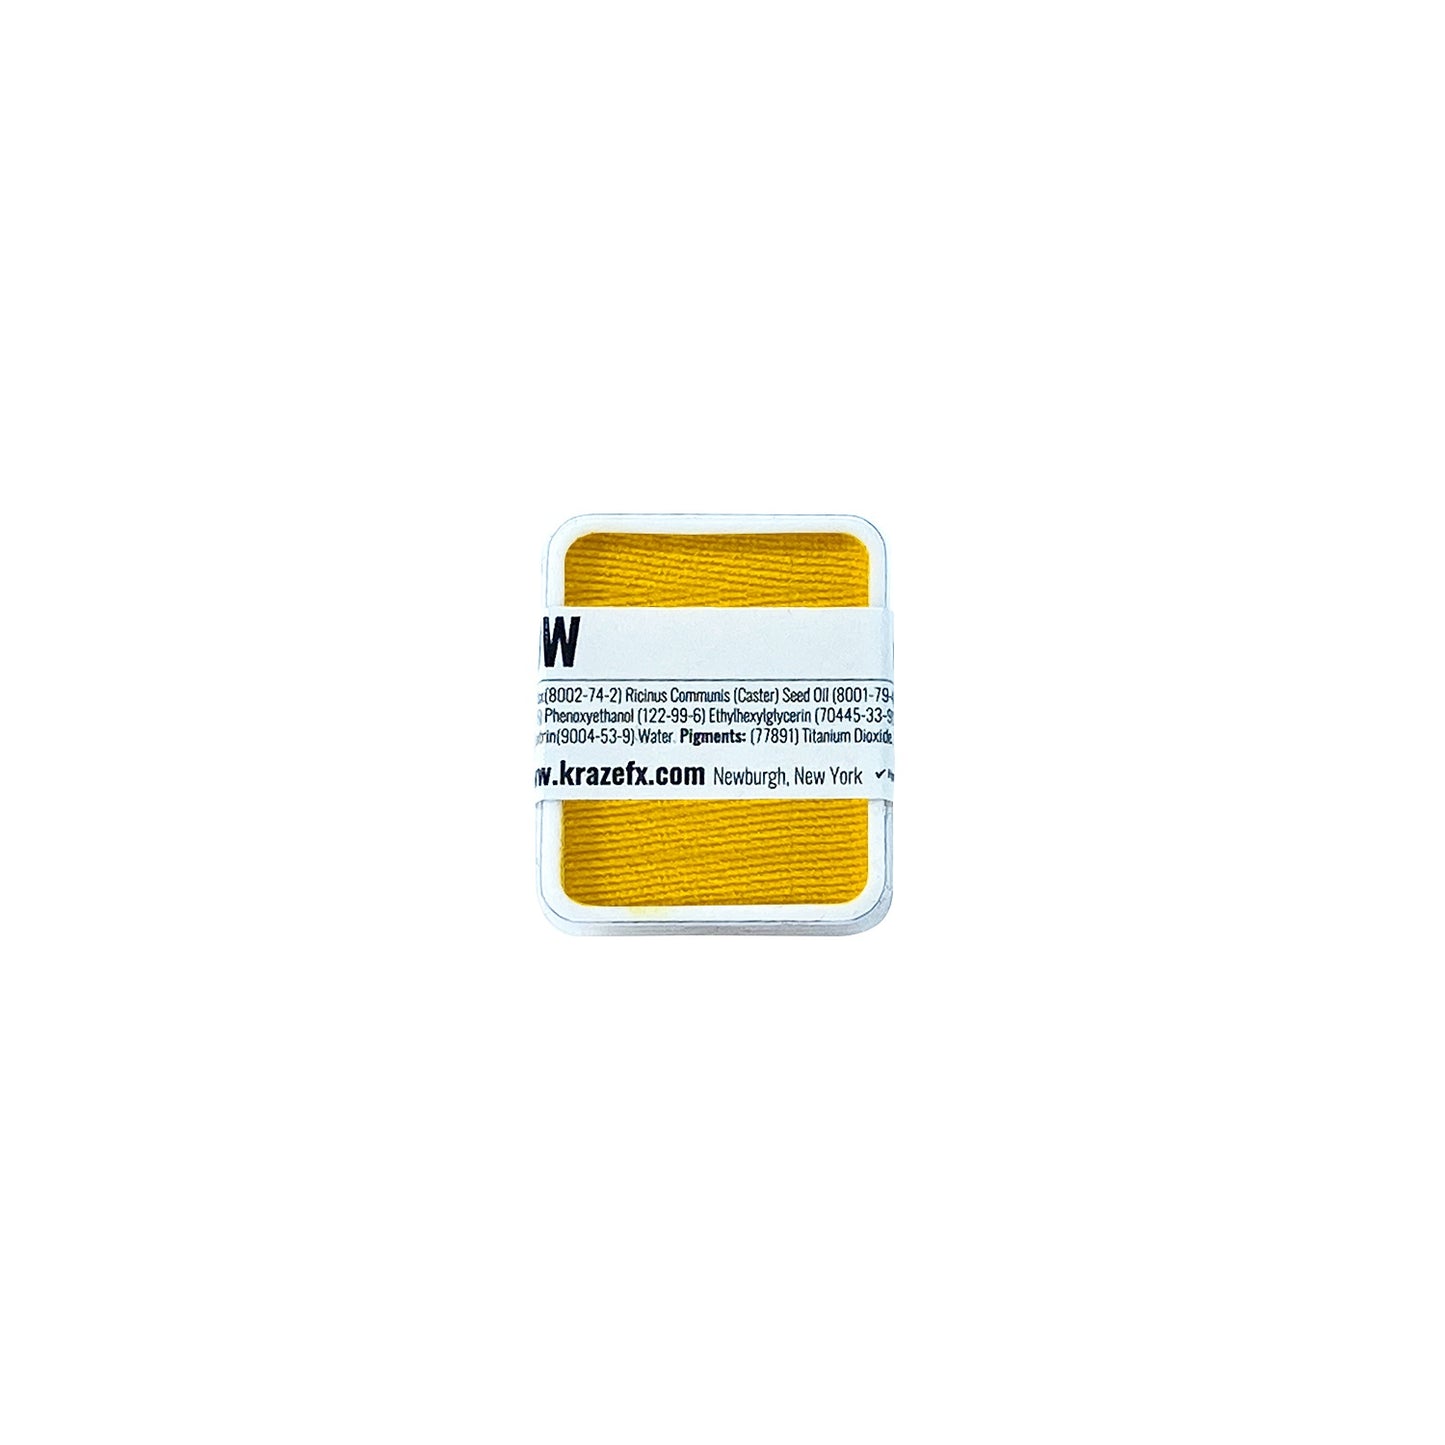 Kraze FX Face Paint Refill - Yellow (6 gm)